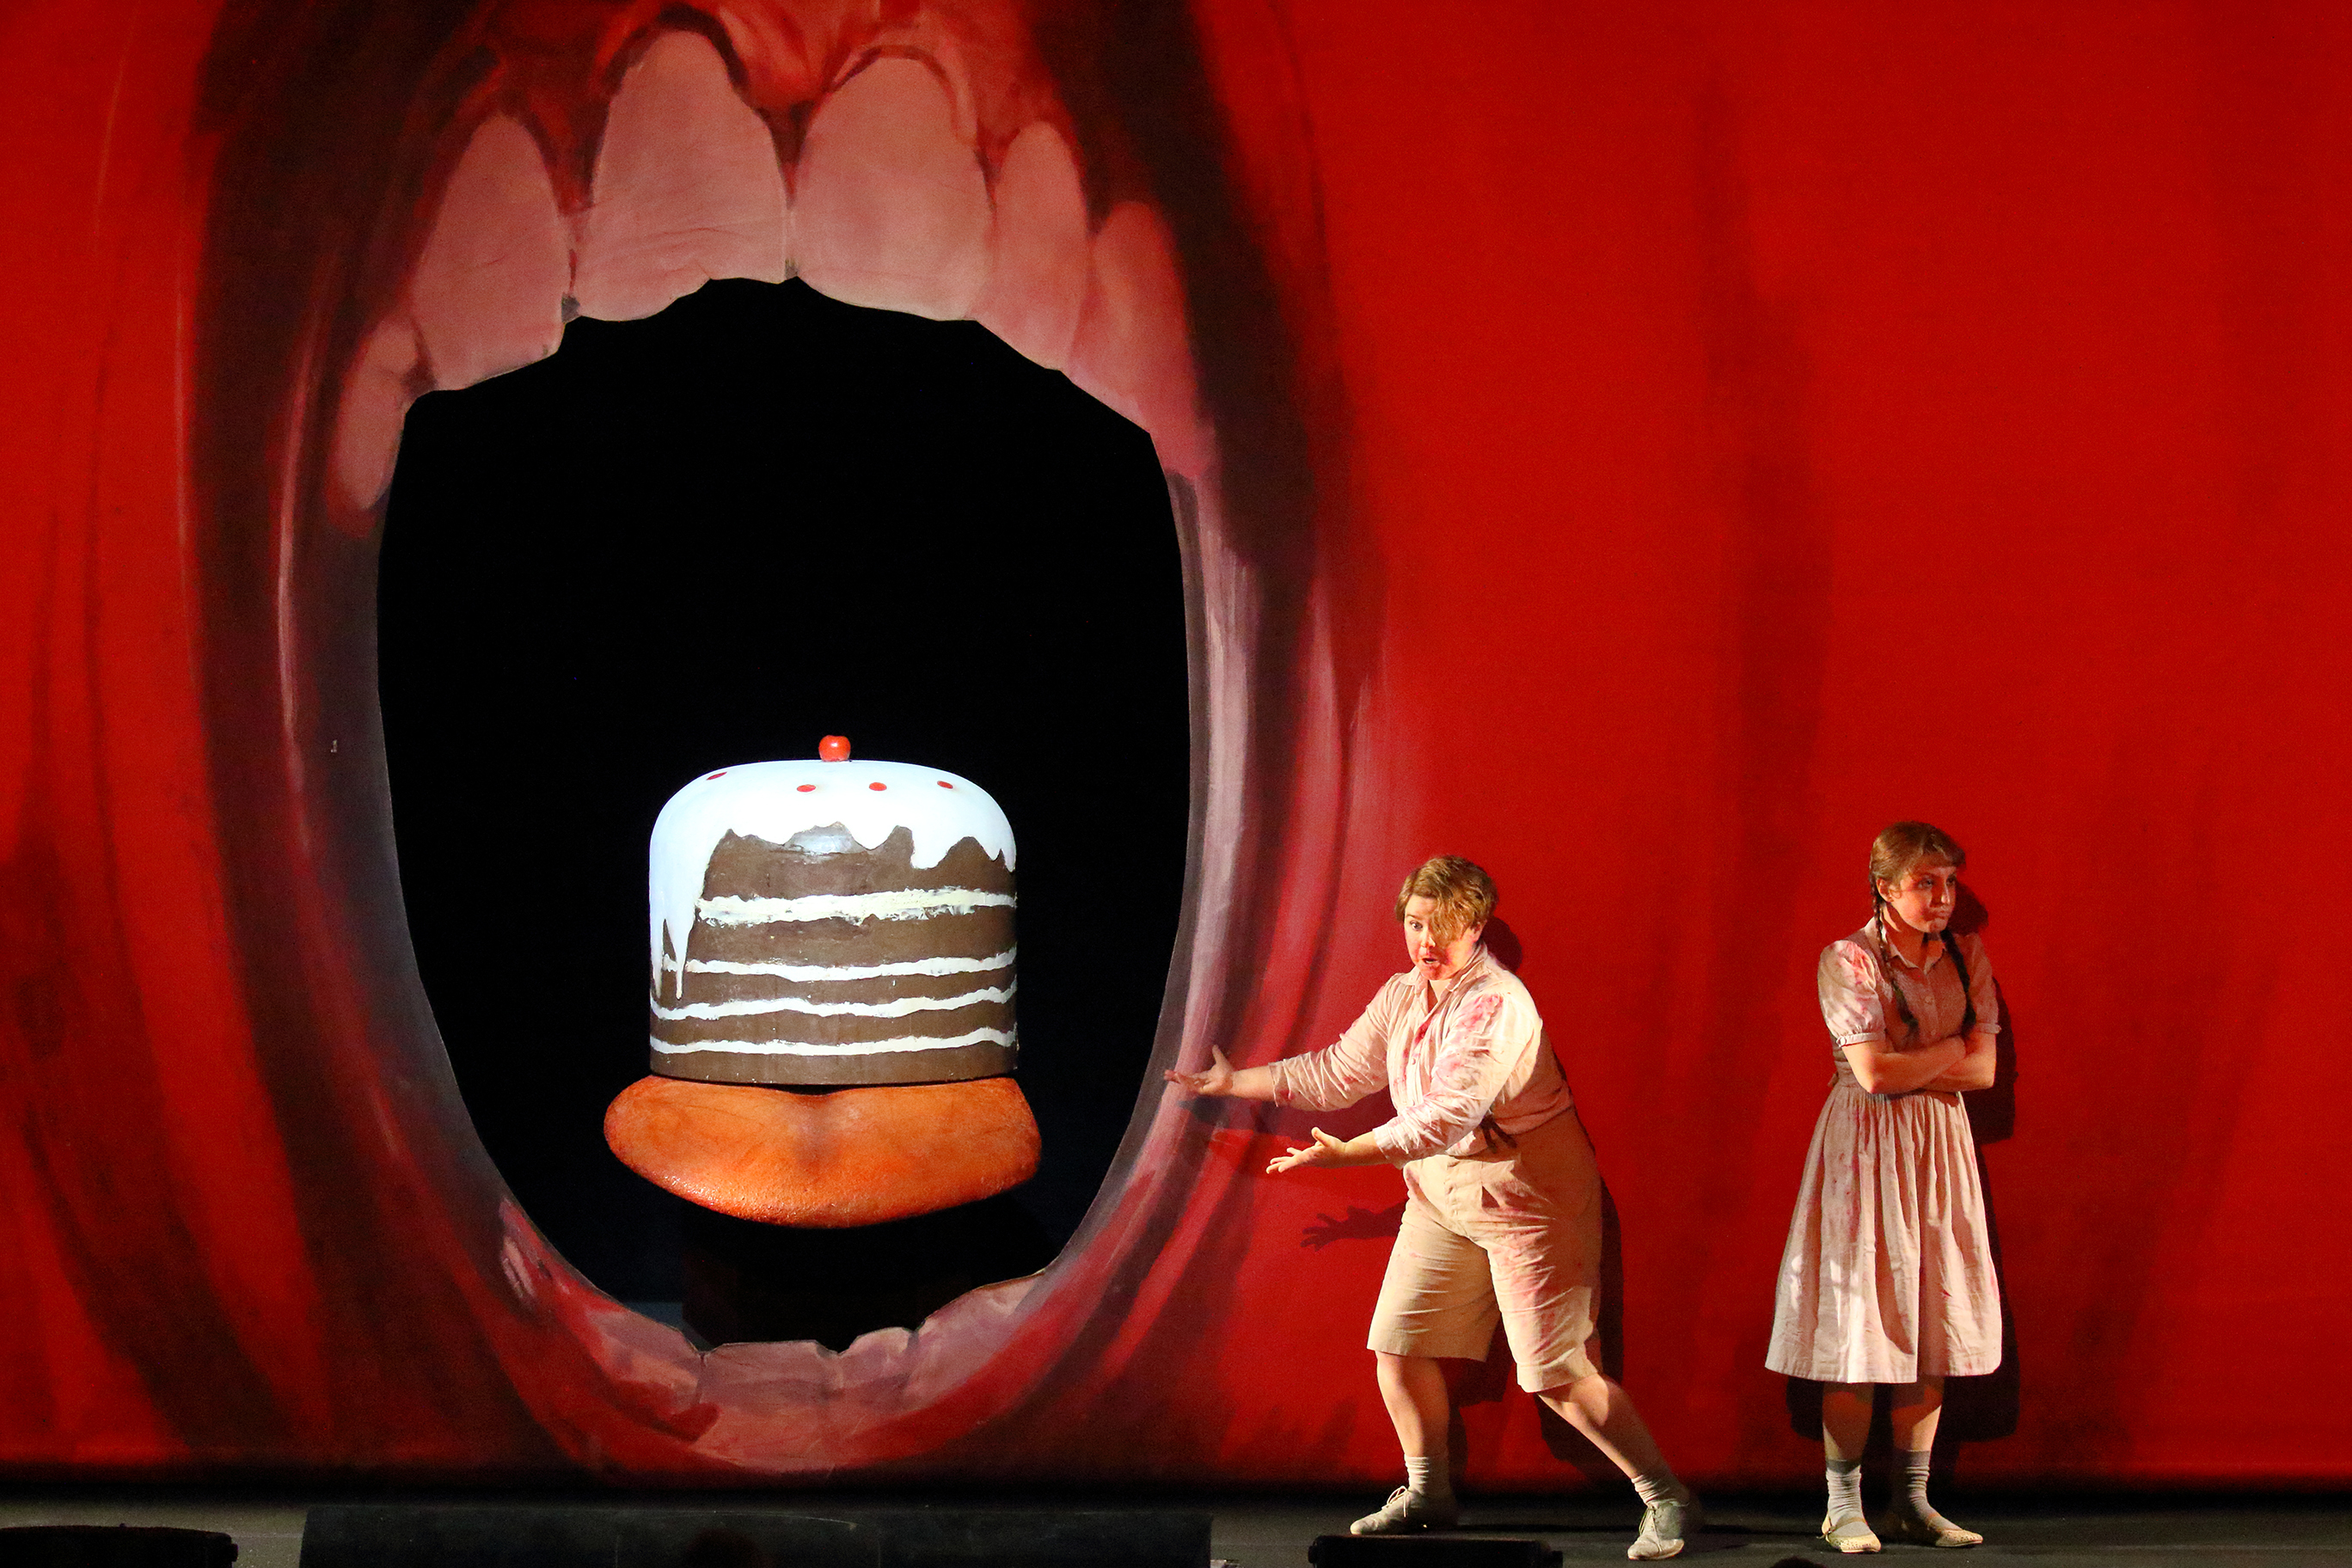 Kannibalismus ist das Thema von Richard Jones' Inszenierung der Oper "Hänsel und Gretel" an der Bayerischen Staatsoper